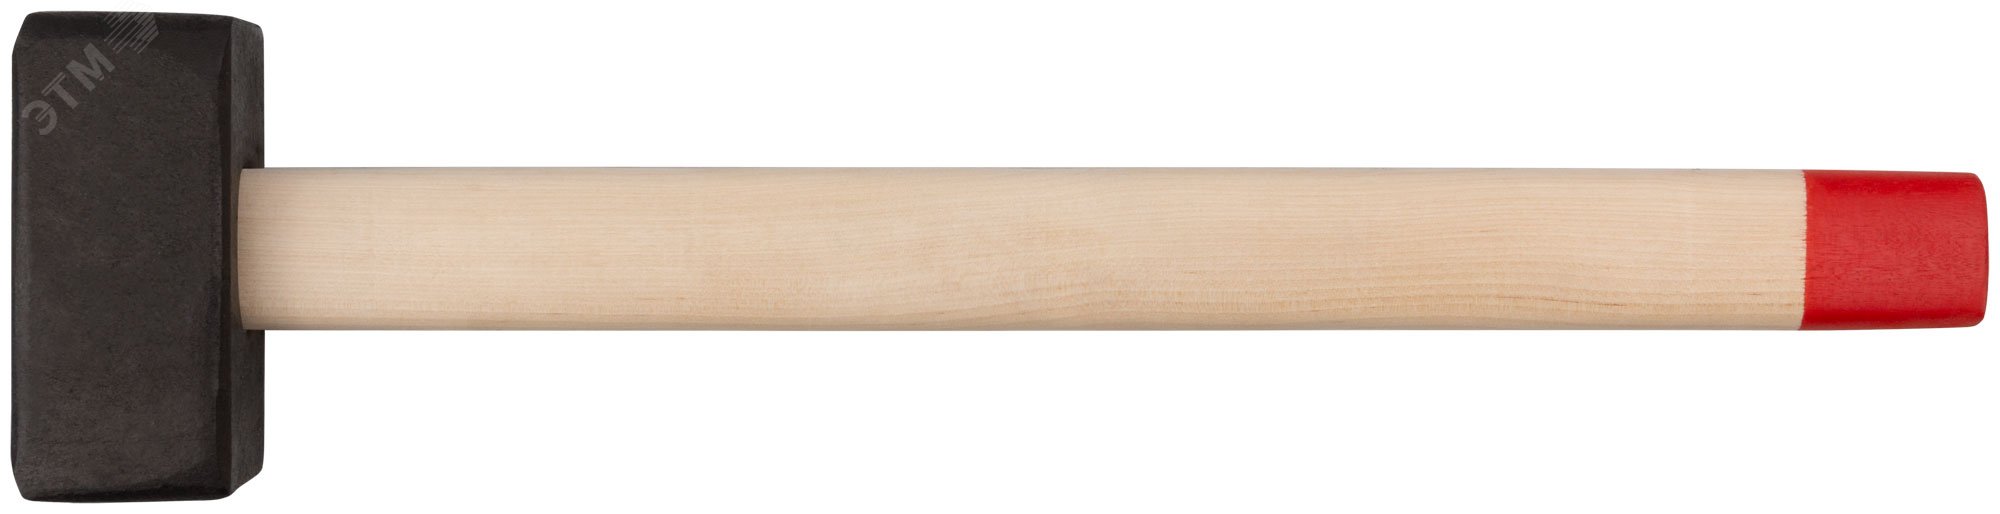 Кувалда кованая в сборе, деревянная ручка 5 кг 45025 КУРС РОС - превью